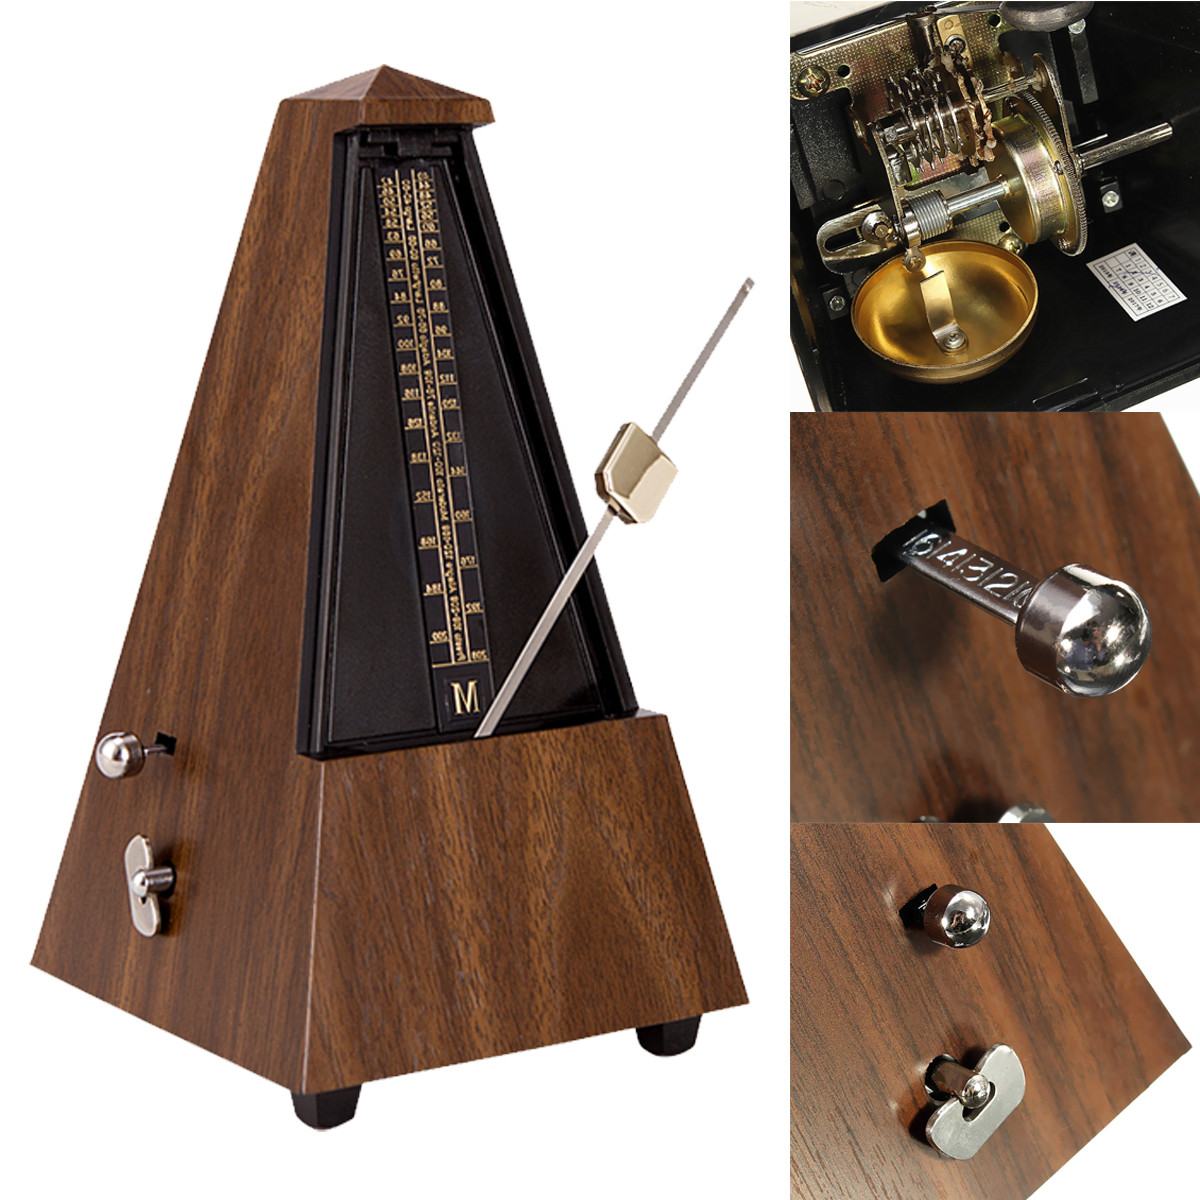 Métronome de guitare Portable, Mini métronome mécanique Musical pour Piano,  guitare, violon, ukulélé